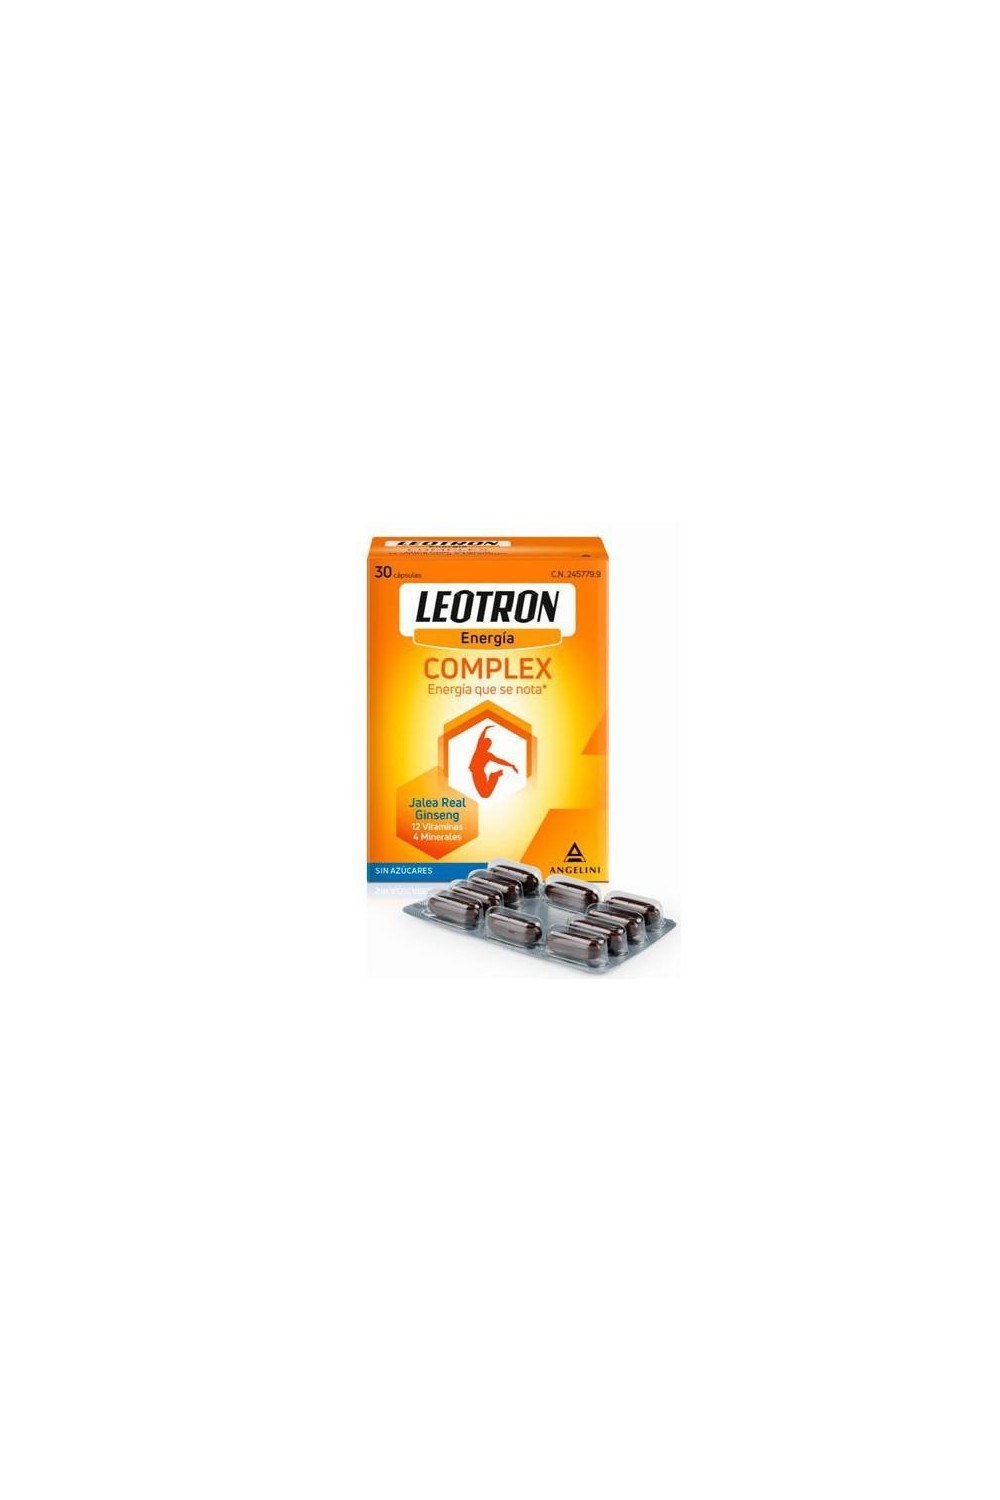 Leotron Complex Energia 30 Capsules